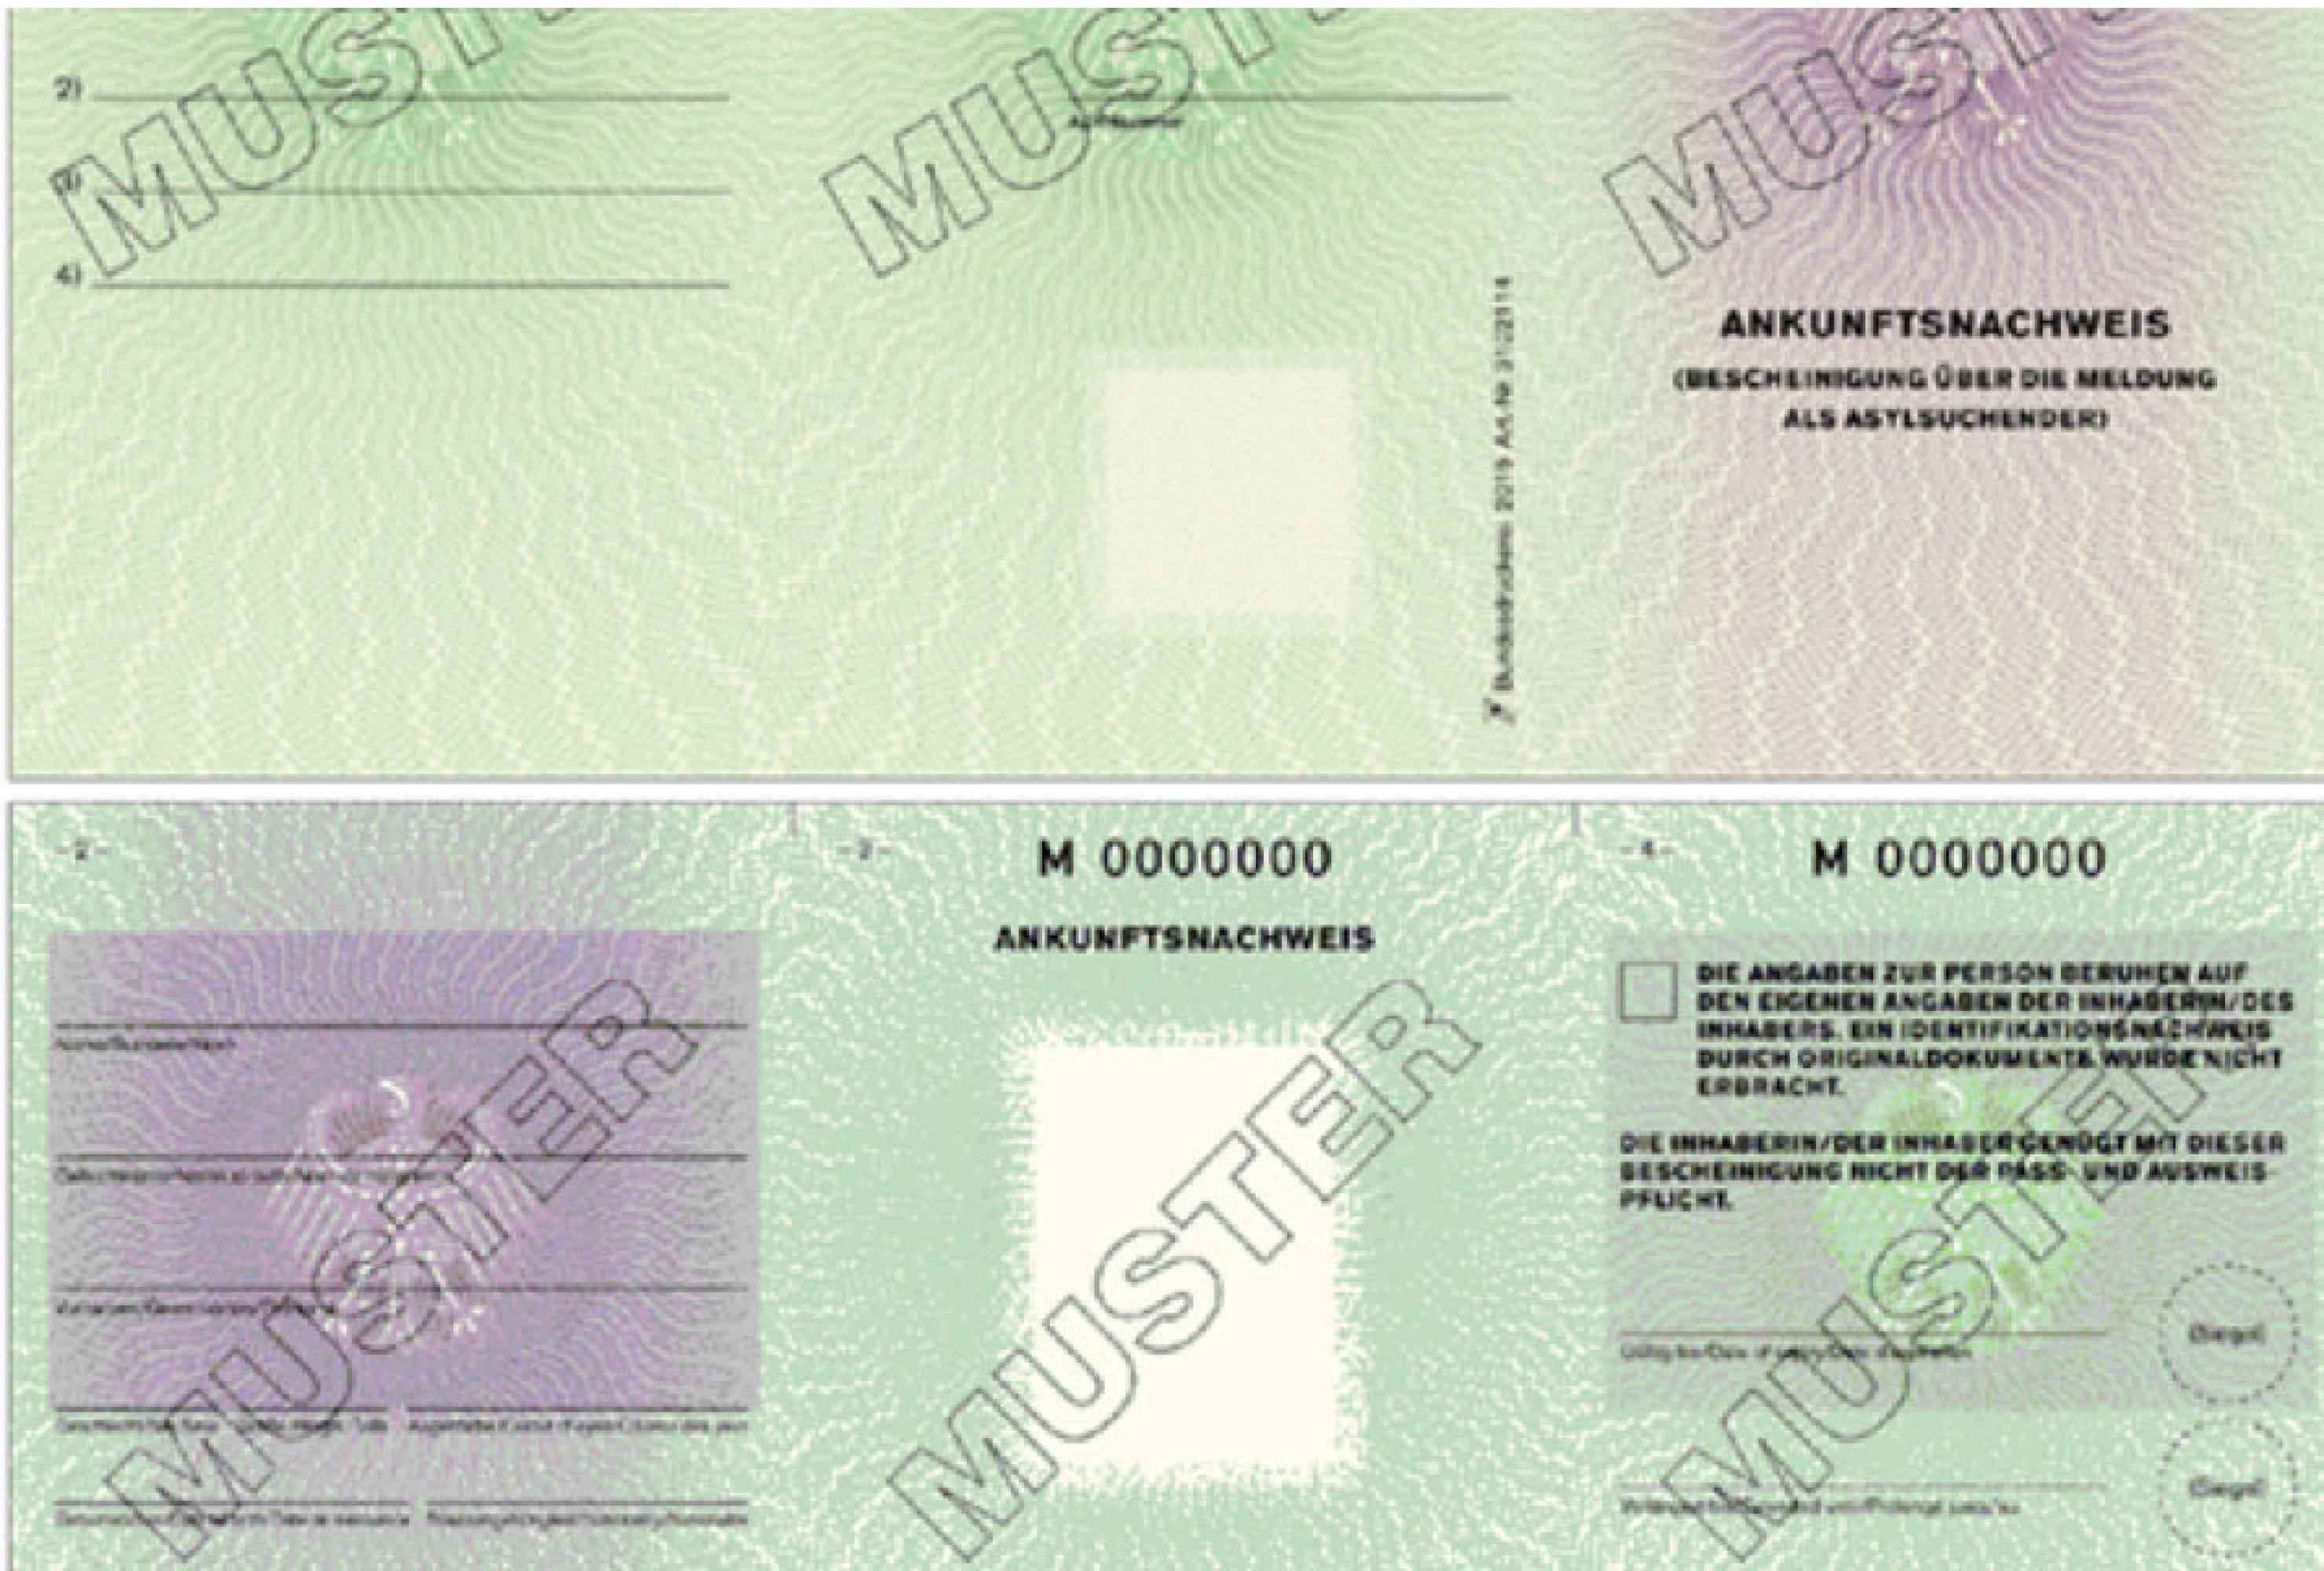 Muster eines Ankunftsnachweis (Vorder- und Rückseite) gemäß Verordnung über die Bescheinigung über die Meldung als Asylsuchender (Ankunftsnachweisverordnung - AKNV) Anlage 4 (zu § 5)